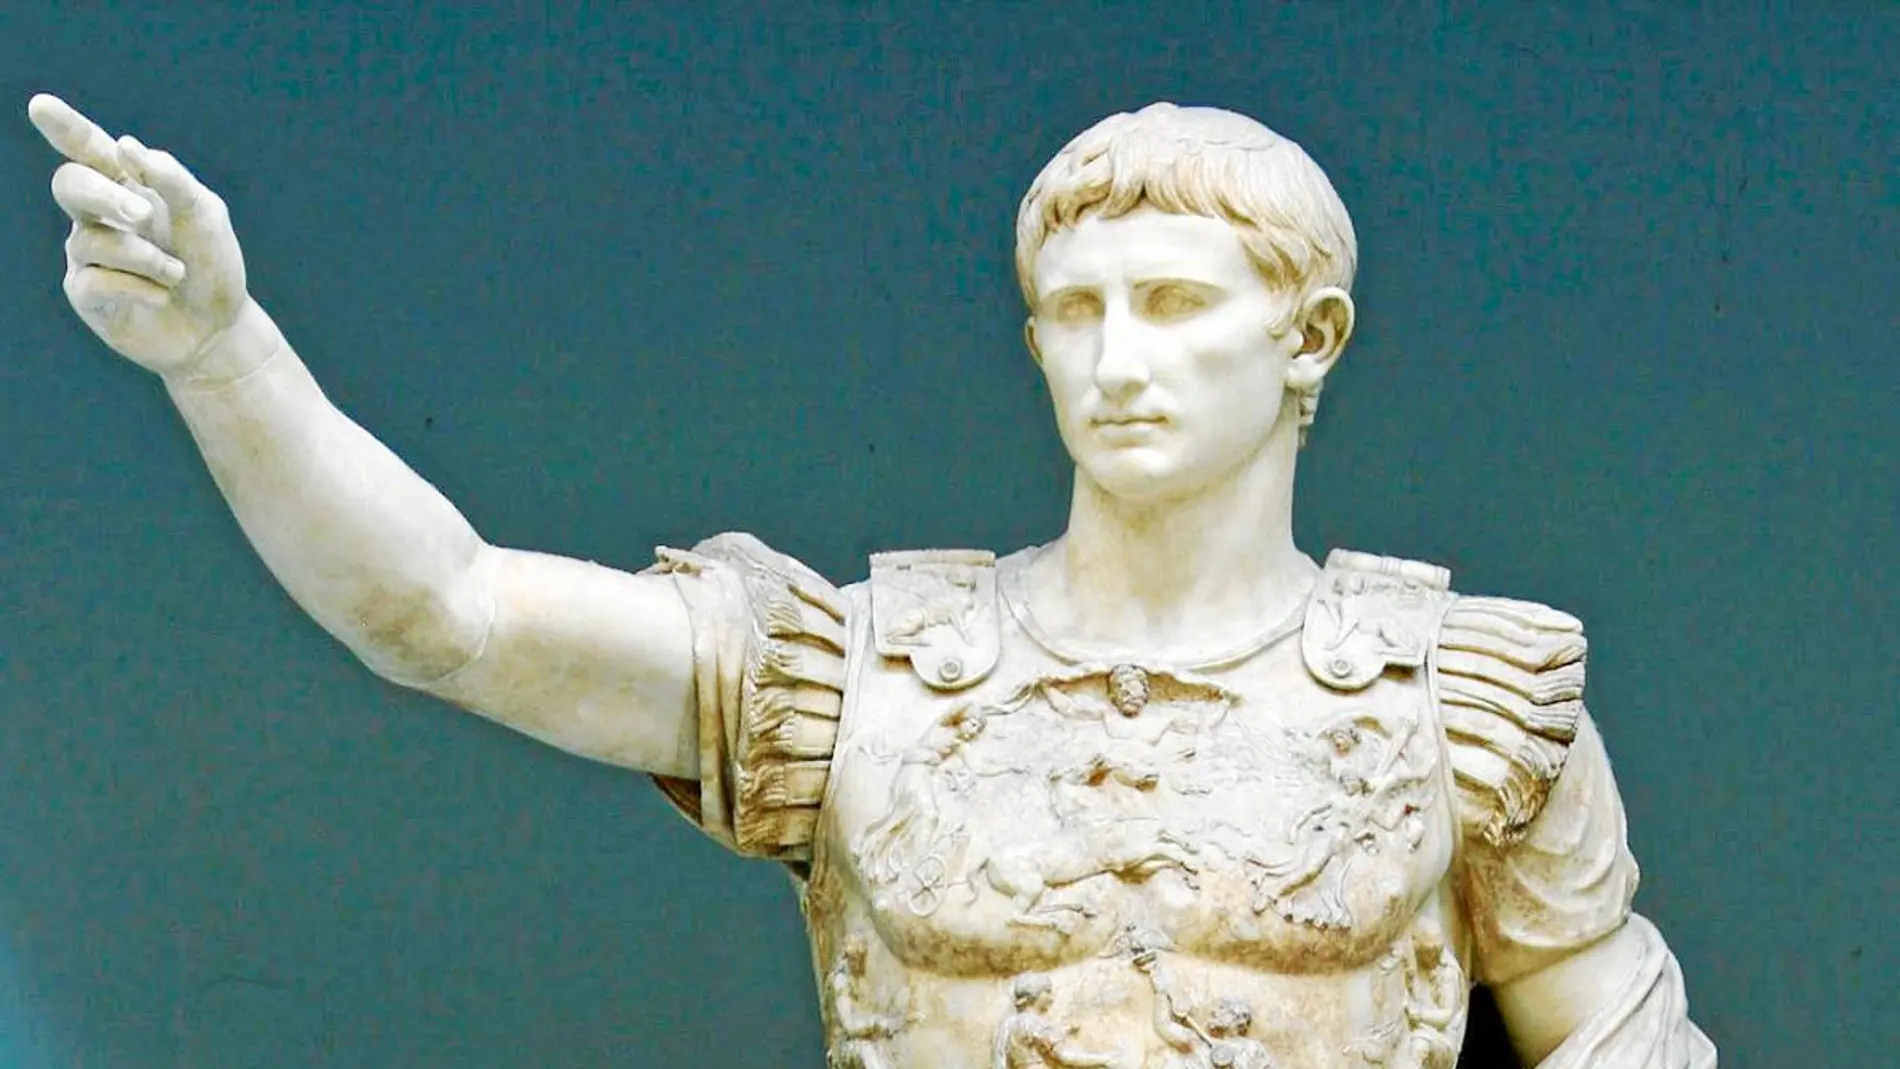 La estabilidad que trajo Augusto como primer emperador se refleja en esta escultura, que hoy se exhibe en los Museos Vaticanos